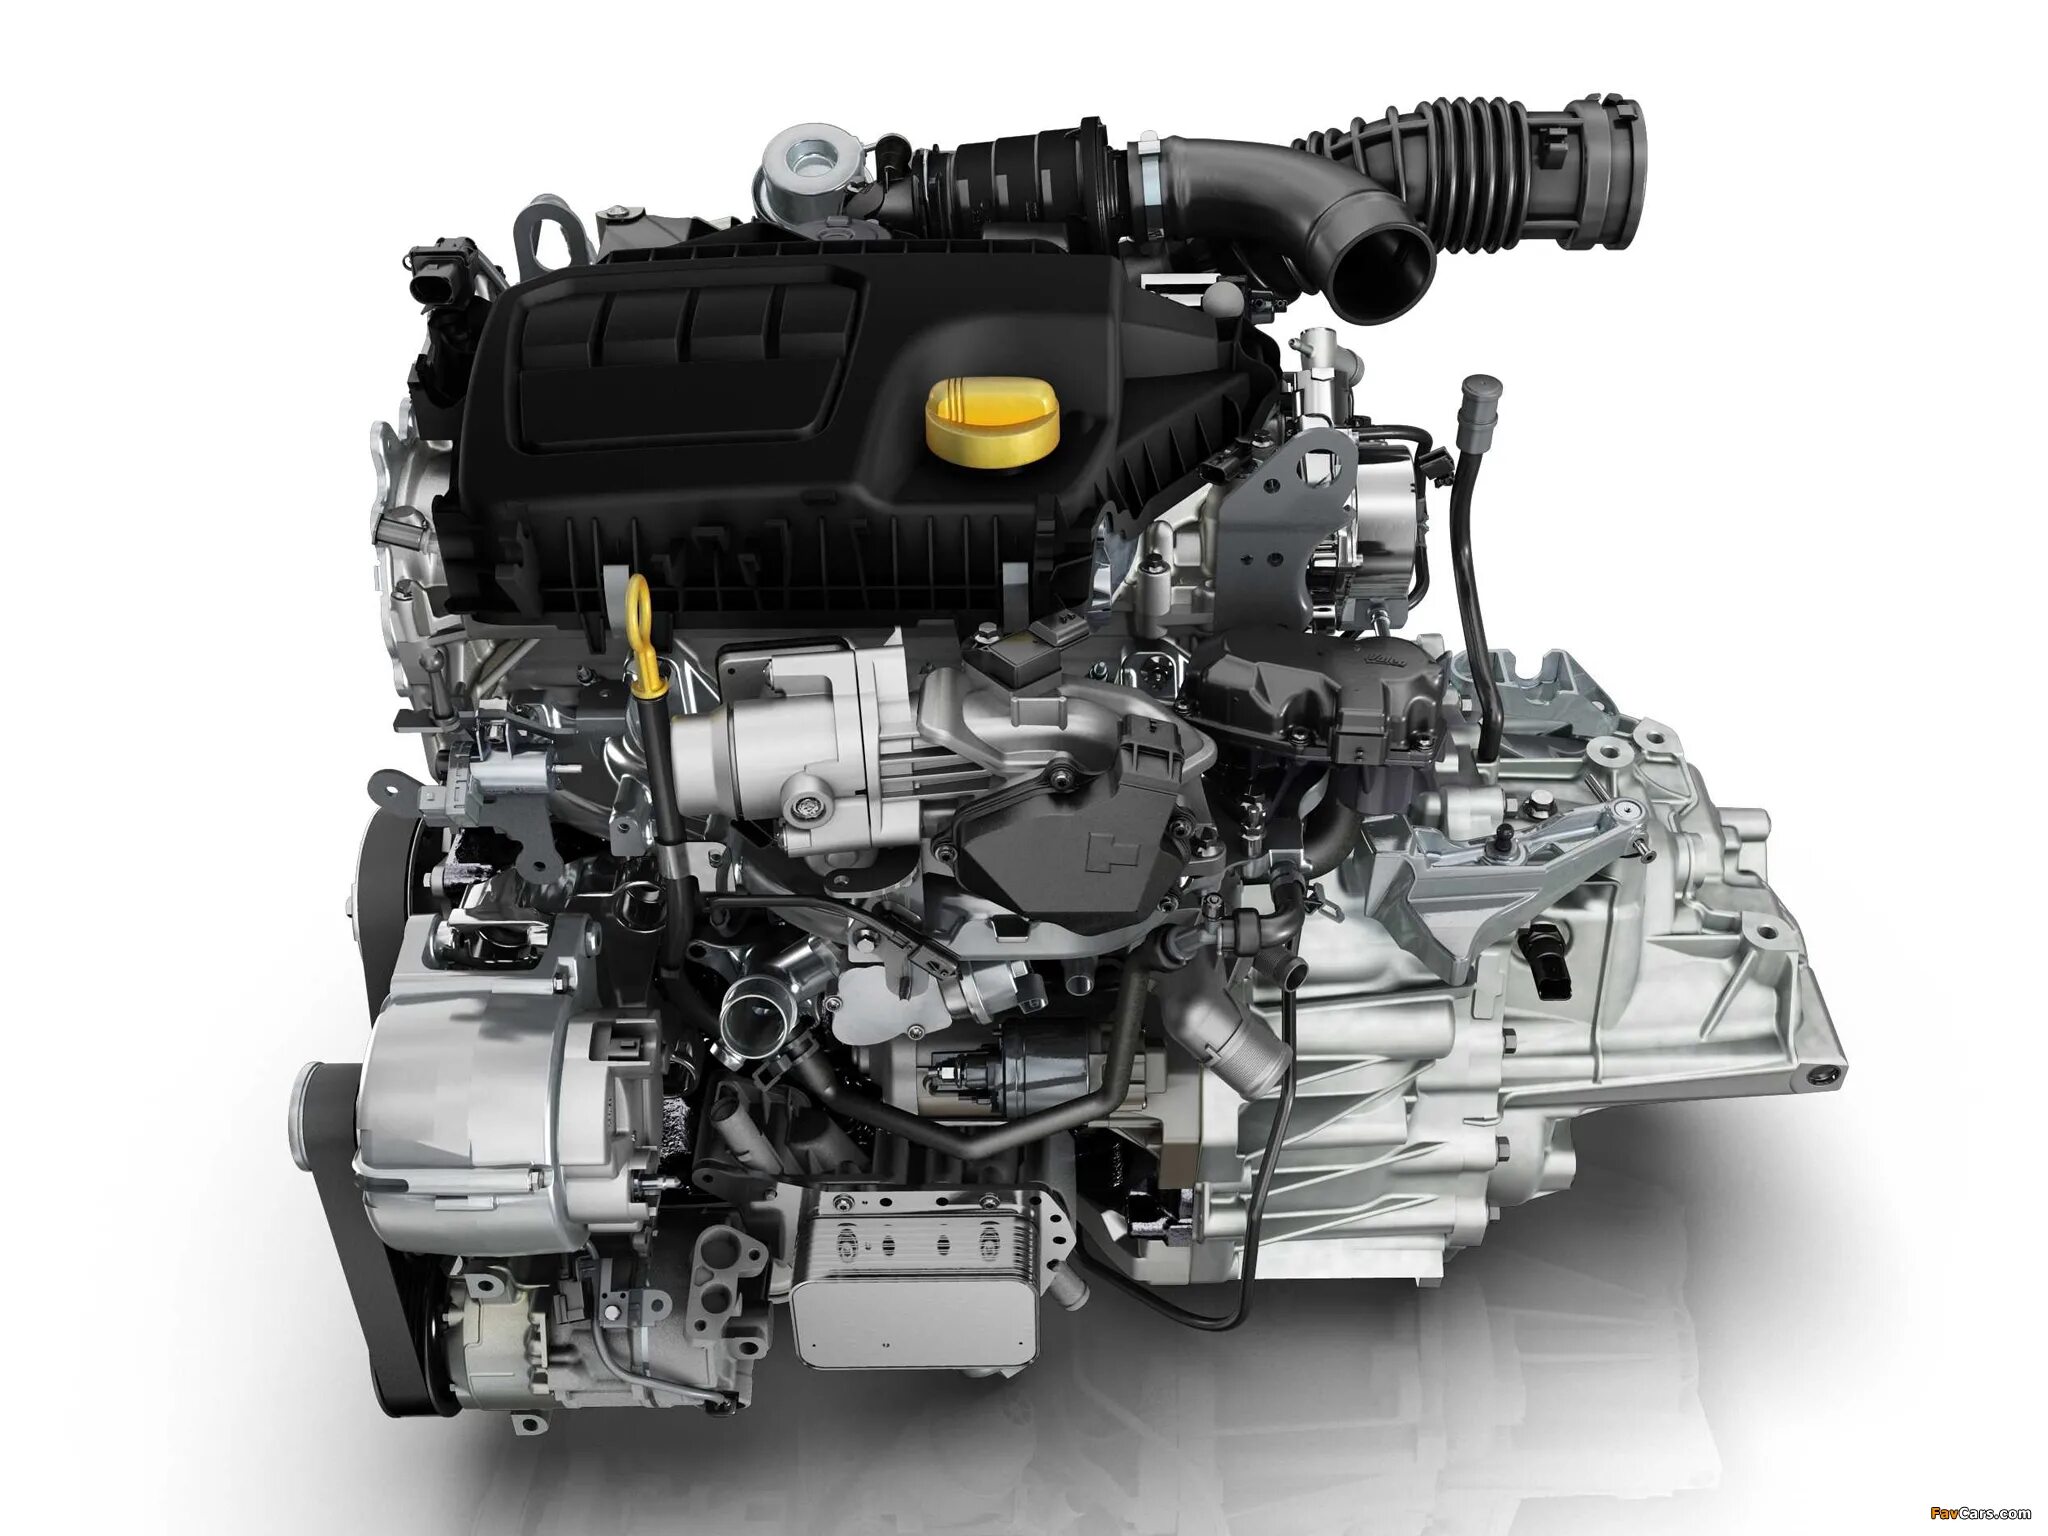 A u 9 9 m r. R9m 1.6 DCI 130л.с. Renault r9m 1.6 DCI. Nissan x-Trail двигатель m9r. R9m 1.6 DCI дизельный турбированный 130.